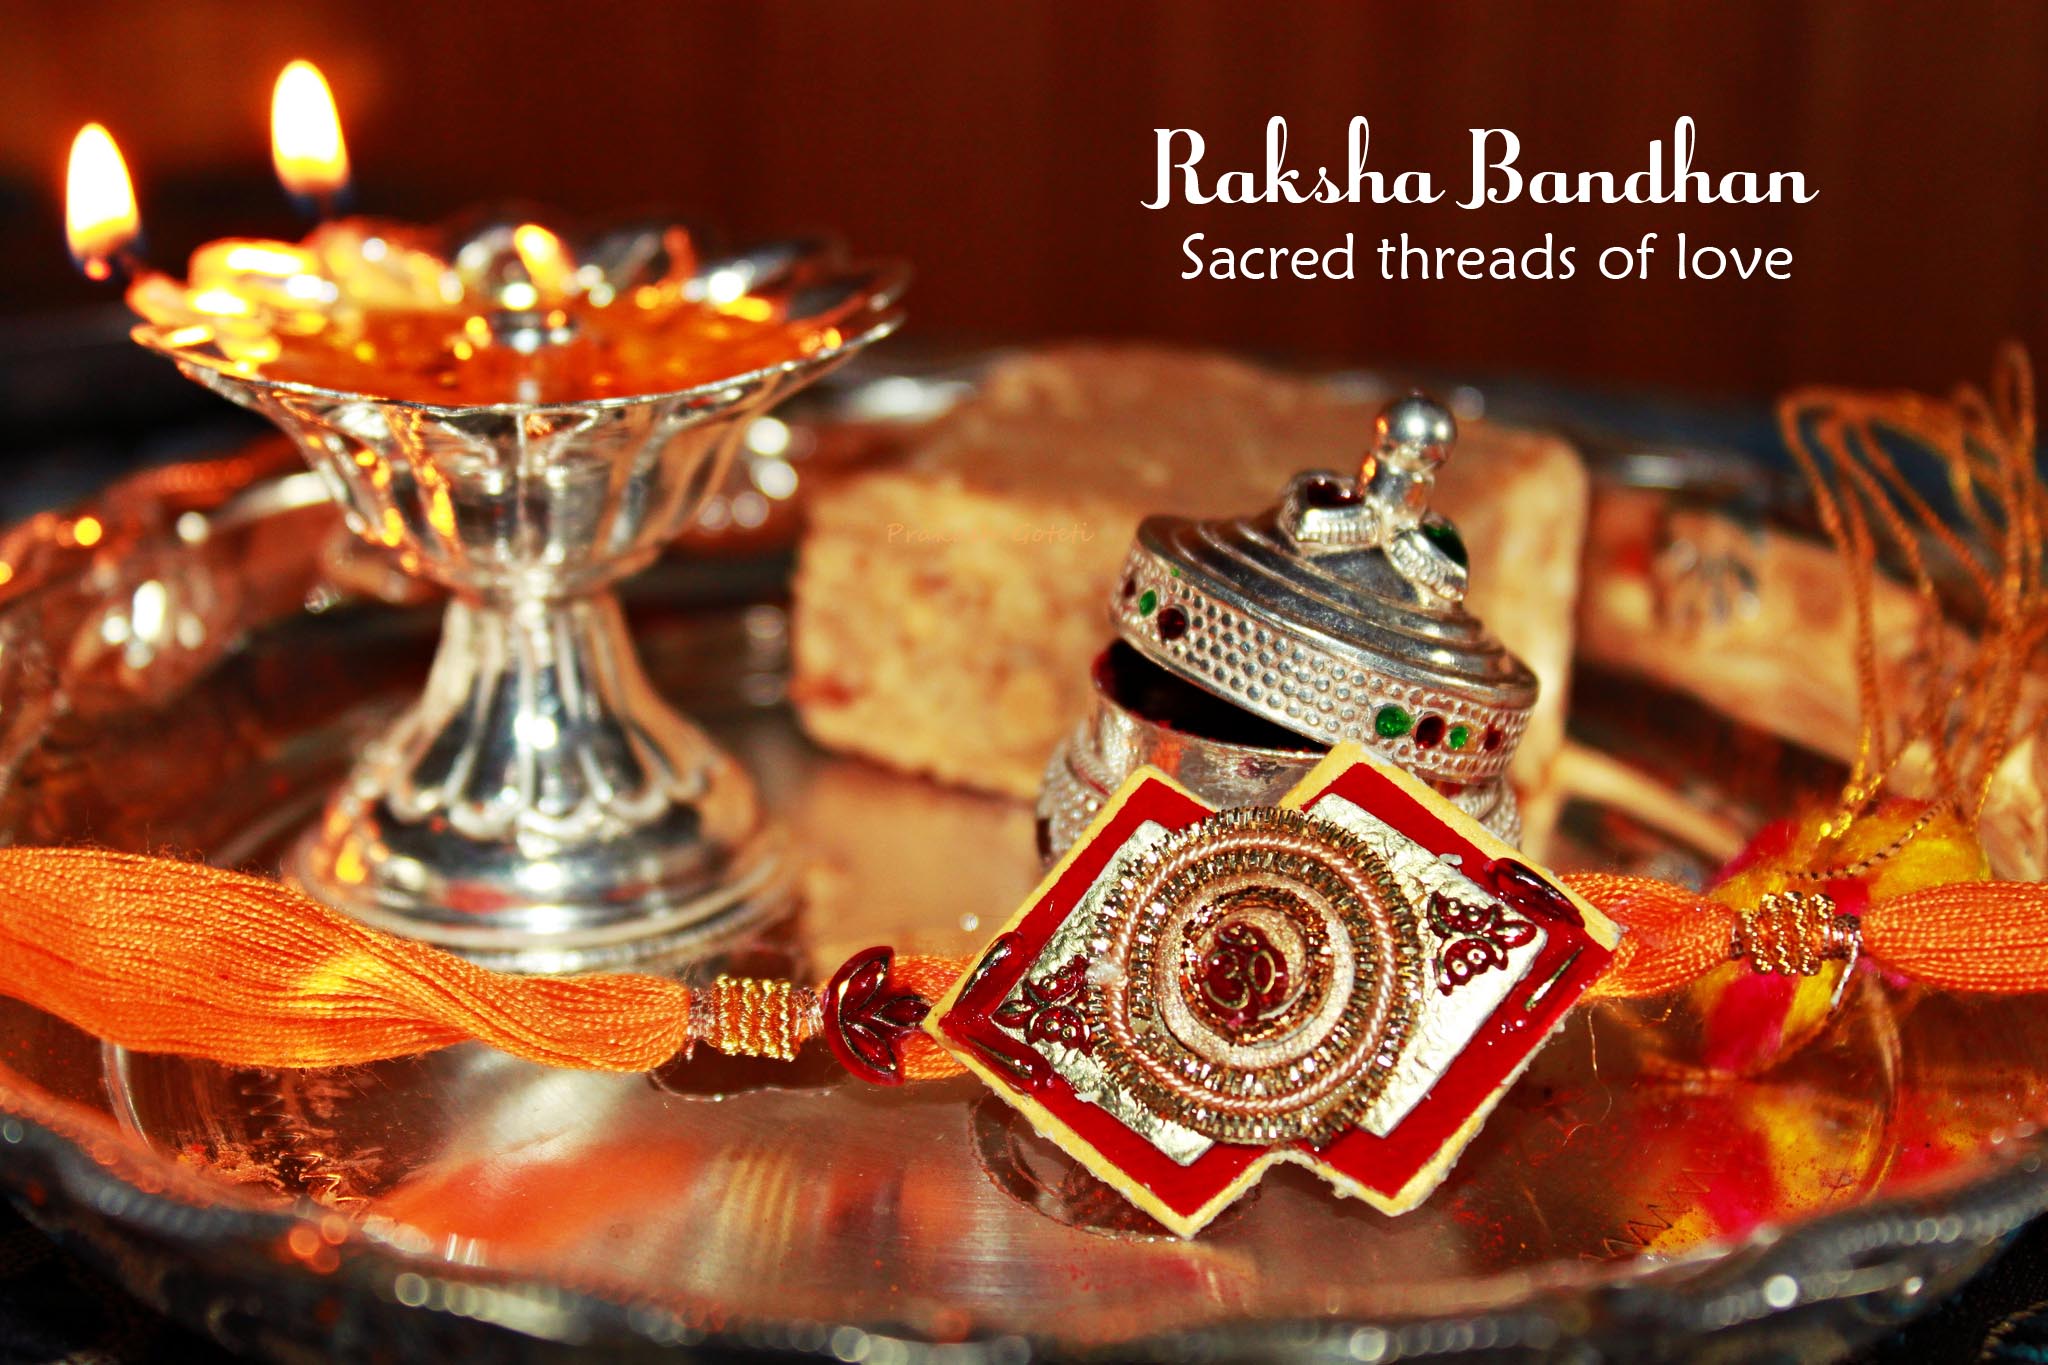 The Threads of Love - Raksha Bandhan